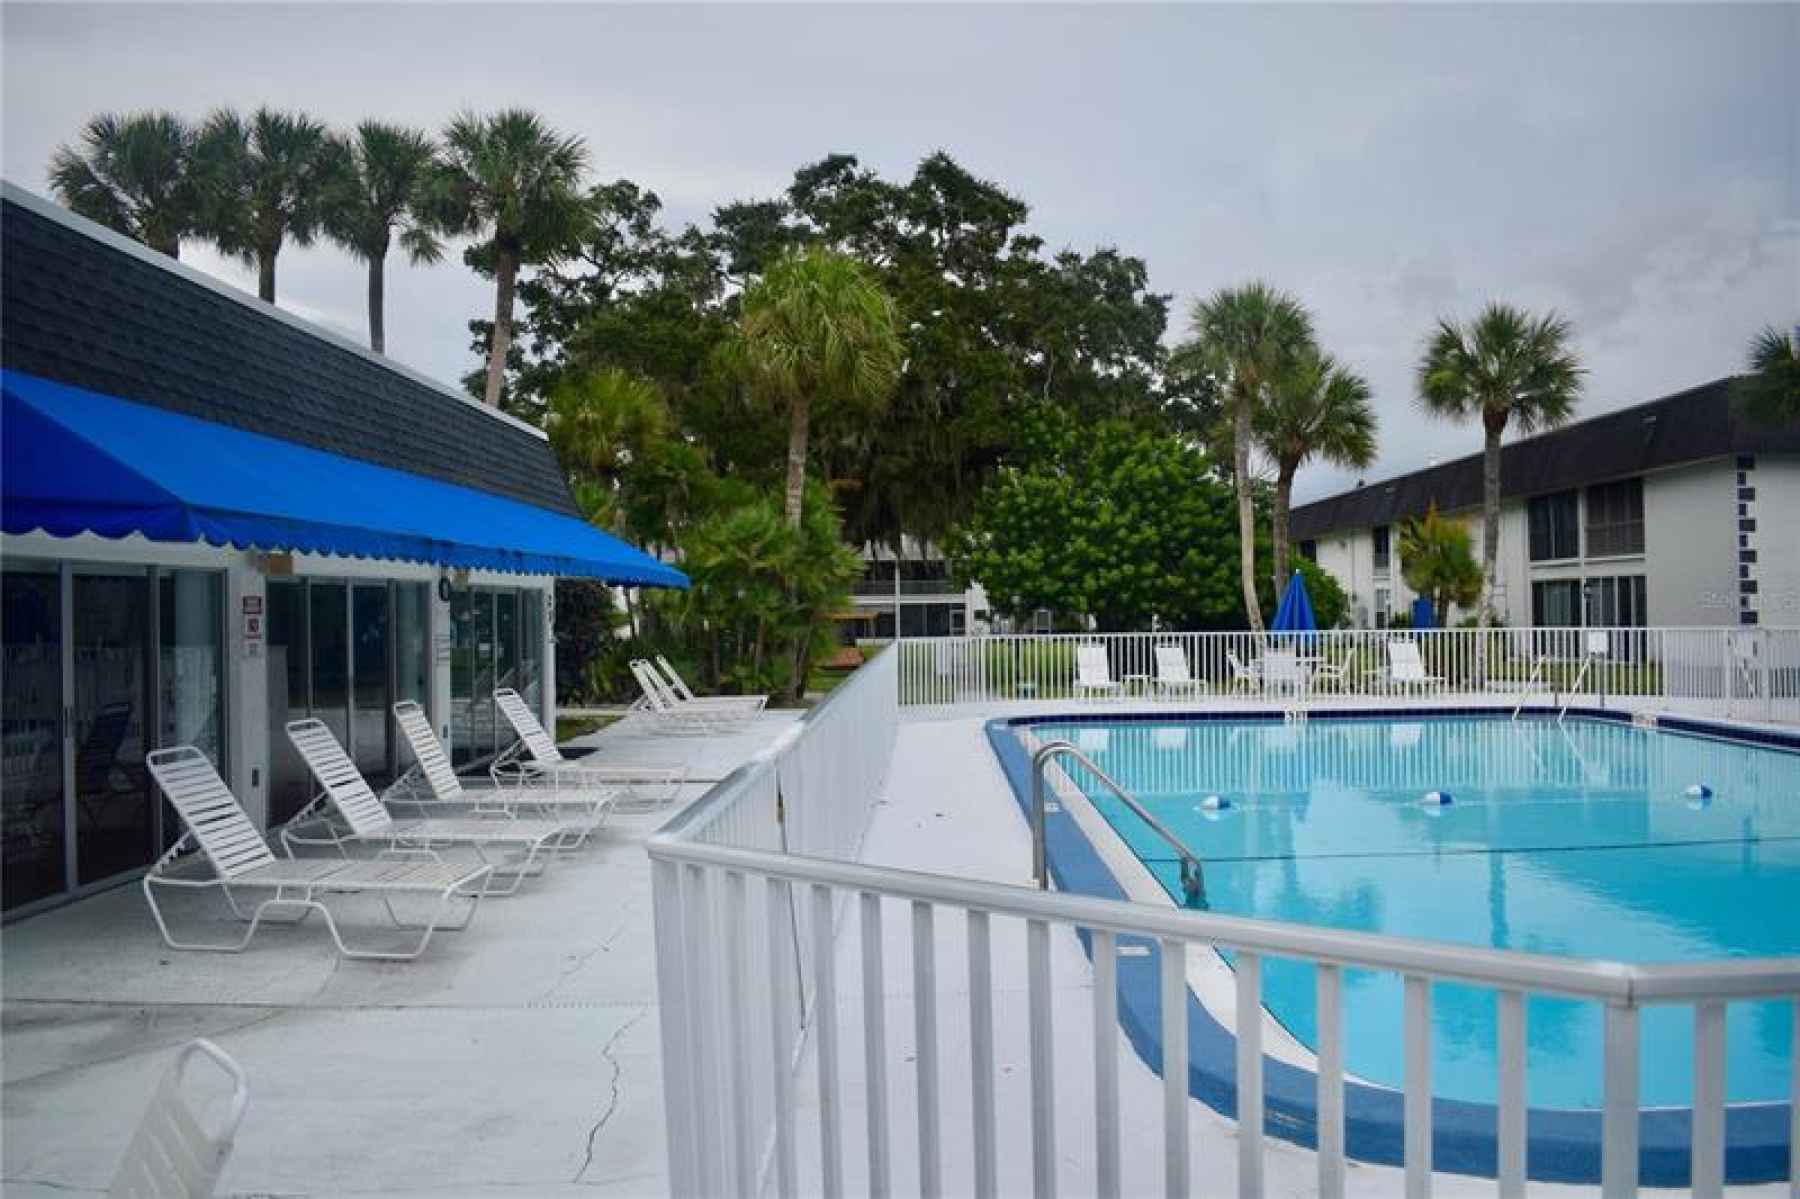 Community pool area